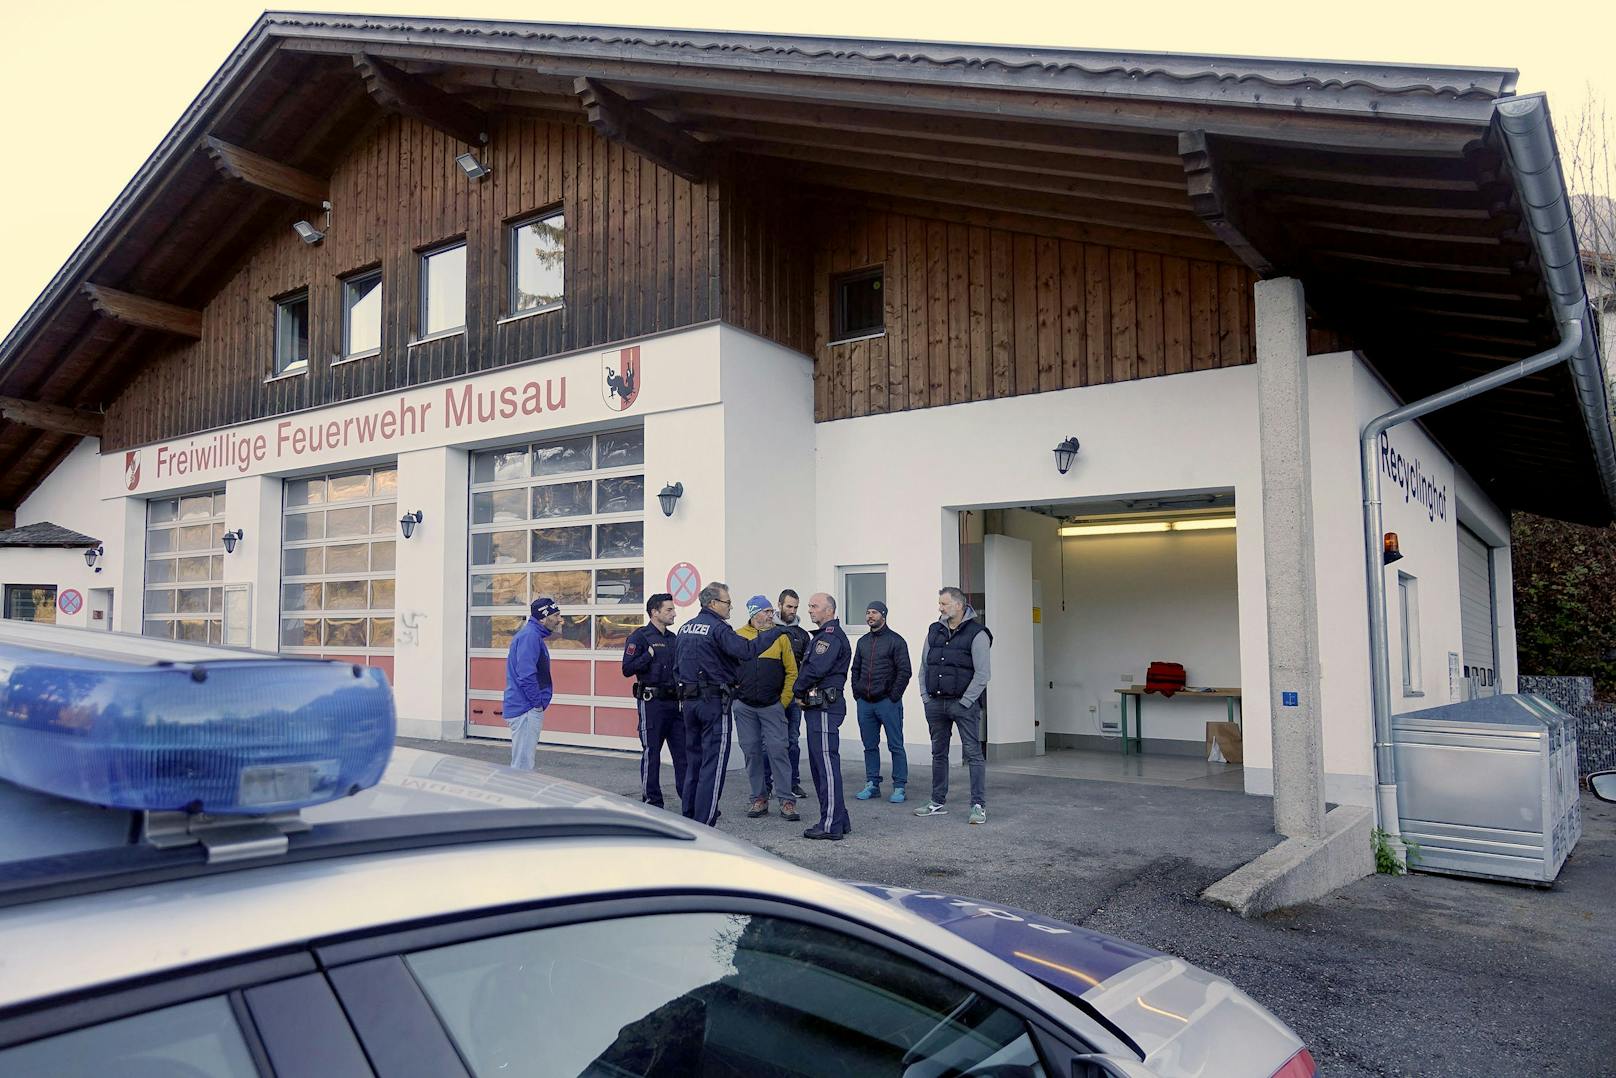 Ein unbekannter Täter hat am 12. November ein Feuerwehr-Haus in Musau (Tirol) mit Nazi-Symbolen beschmiert. Außerdem zündete er im Keller Papier an.